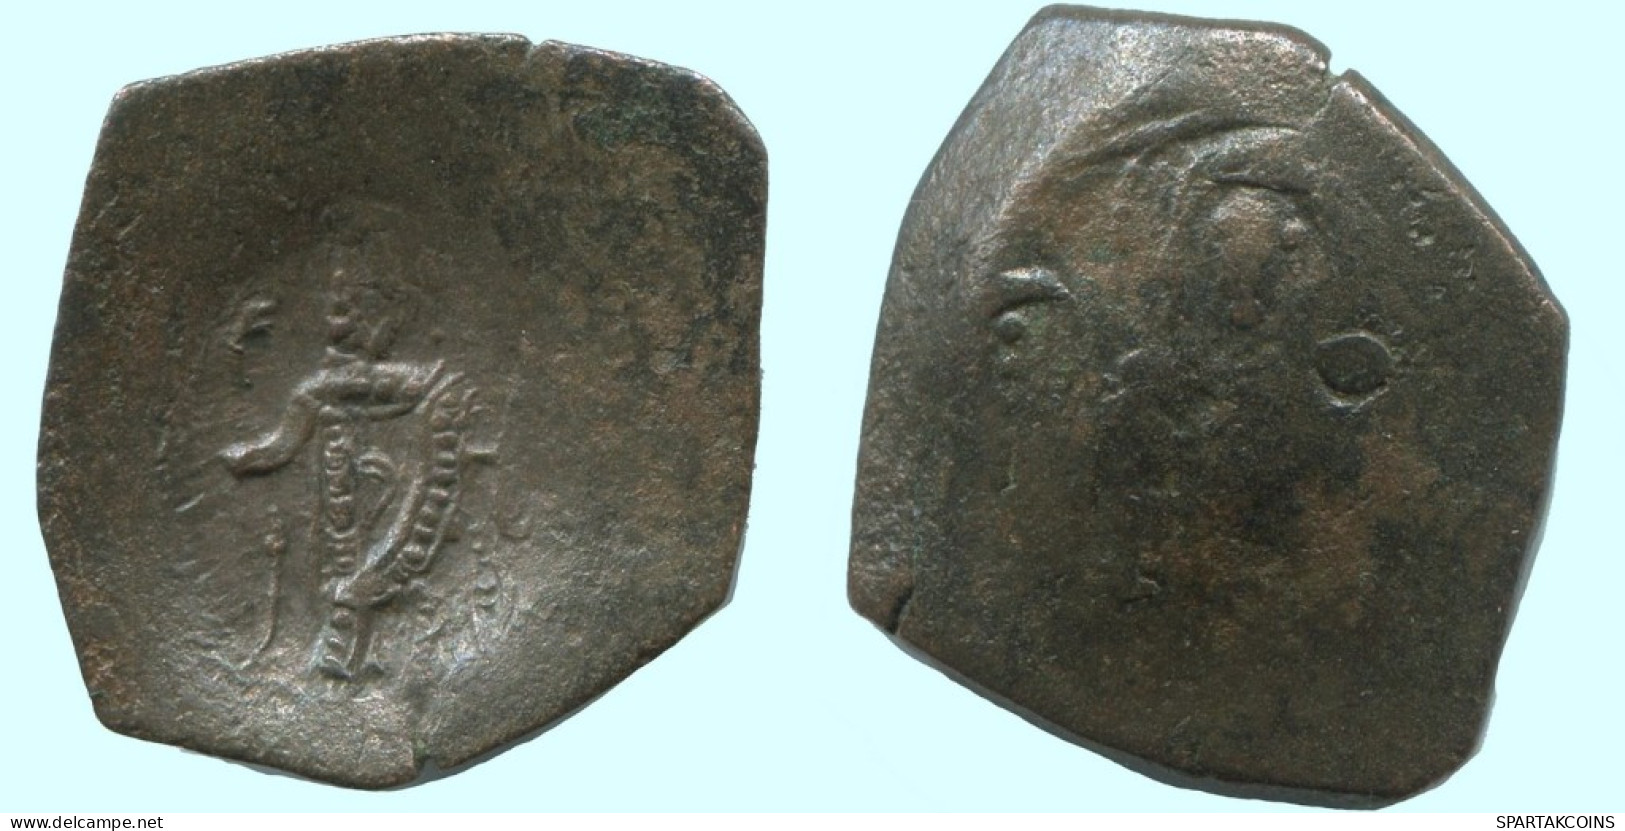 TRACHY BYZANTINISCHE Münze  EMPIRE Antike Authentisch Münze 1.6g/20mm #AG638.4.D.A - Byzantines